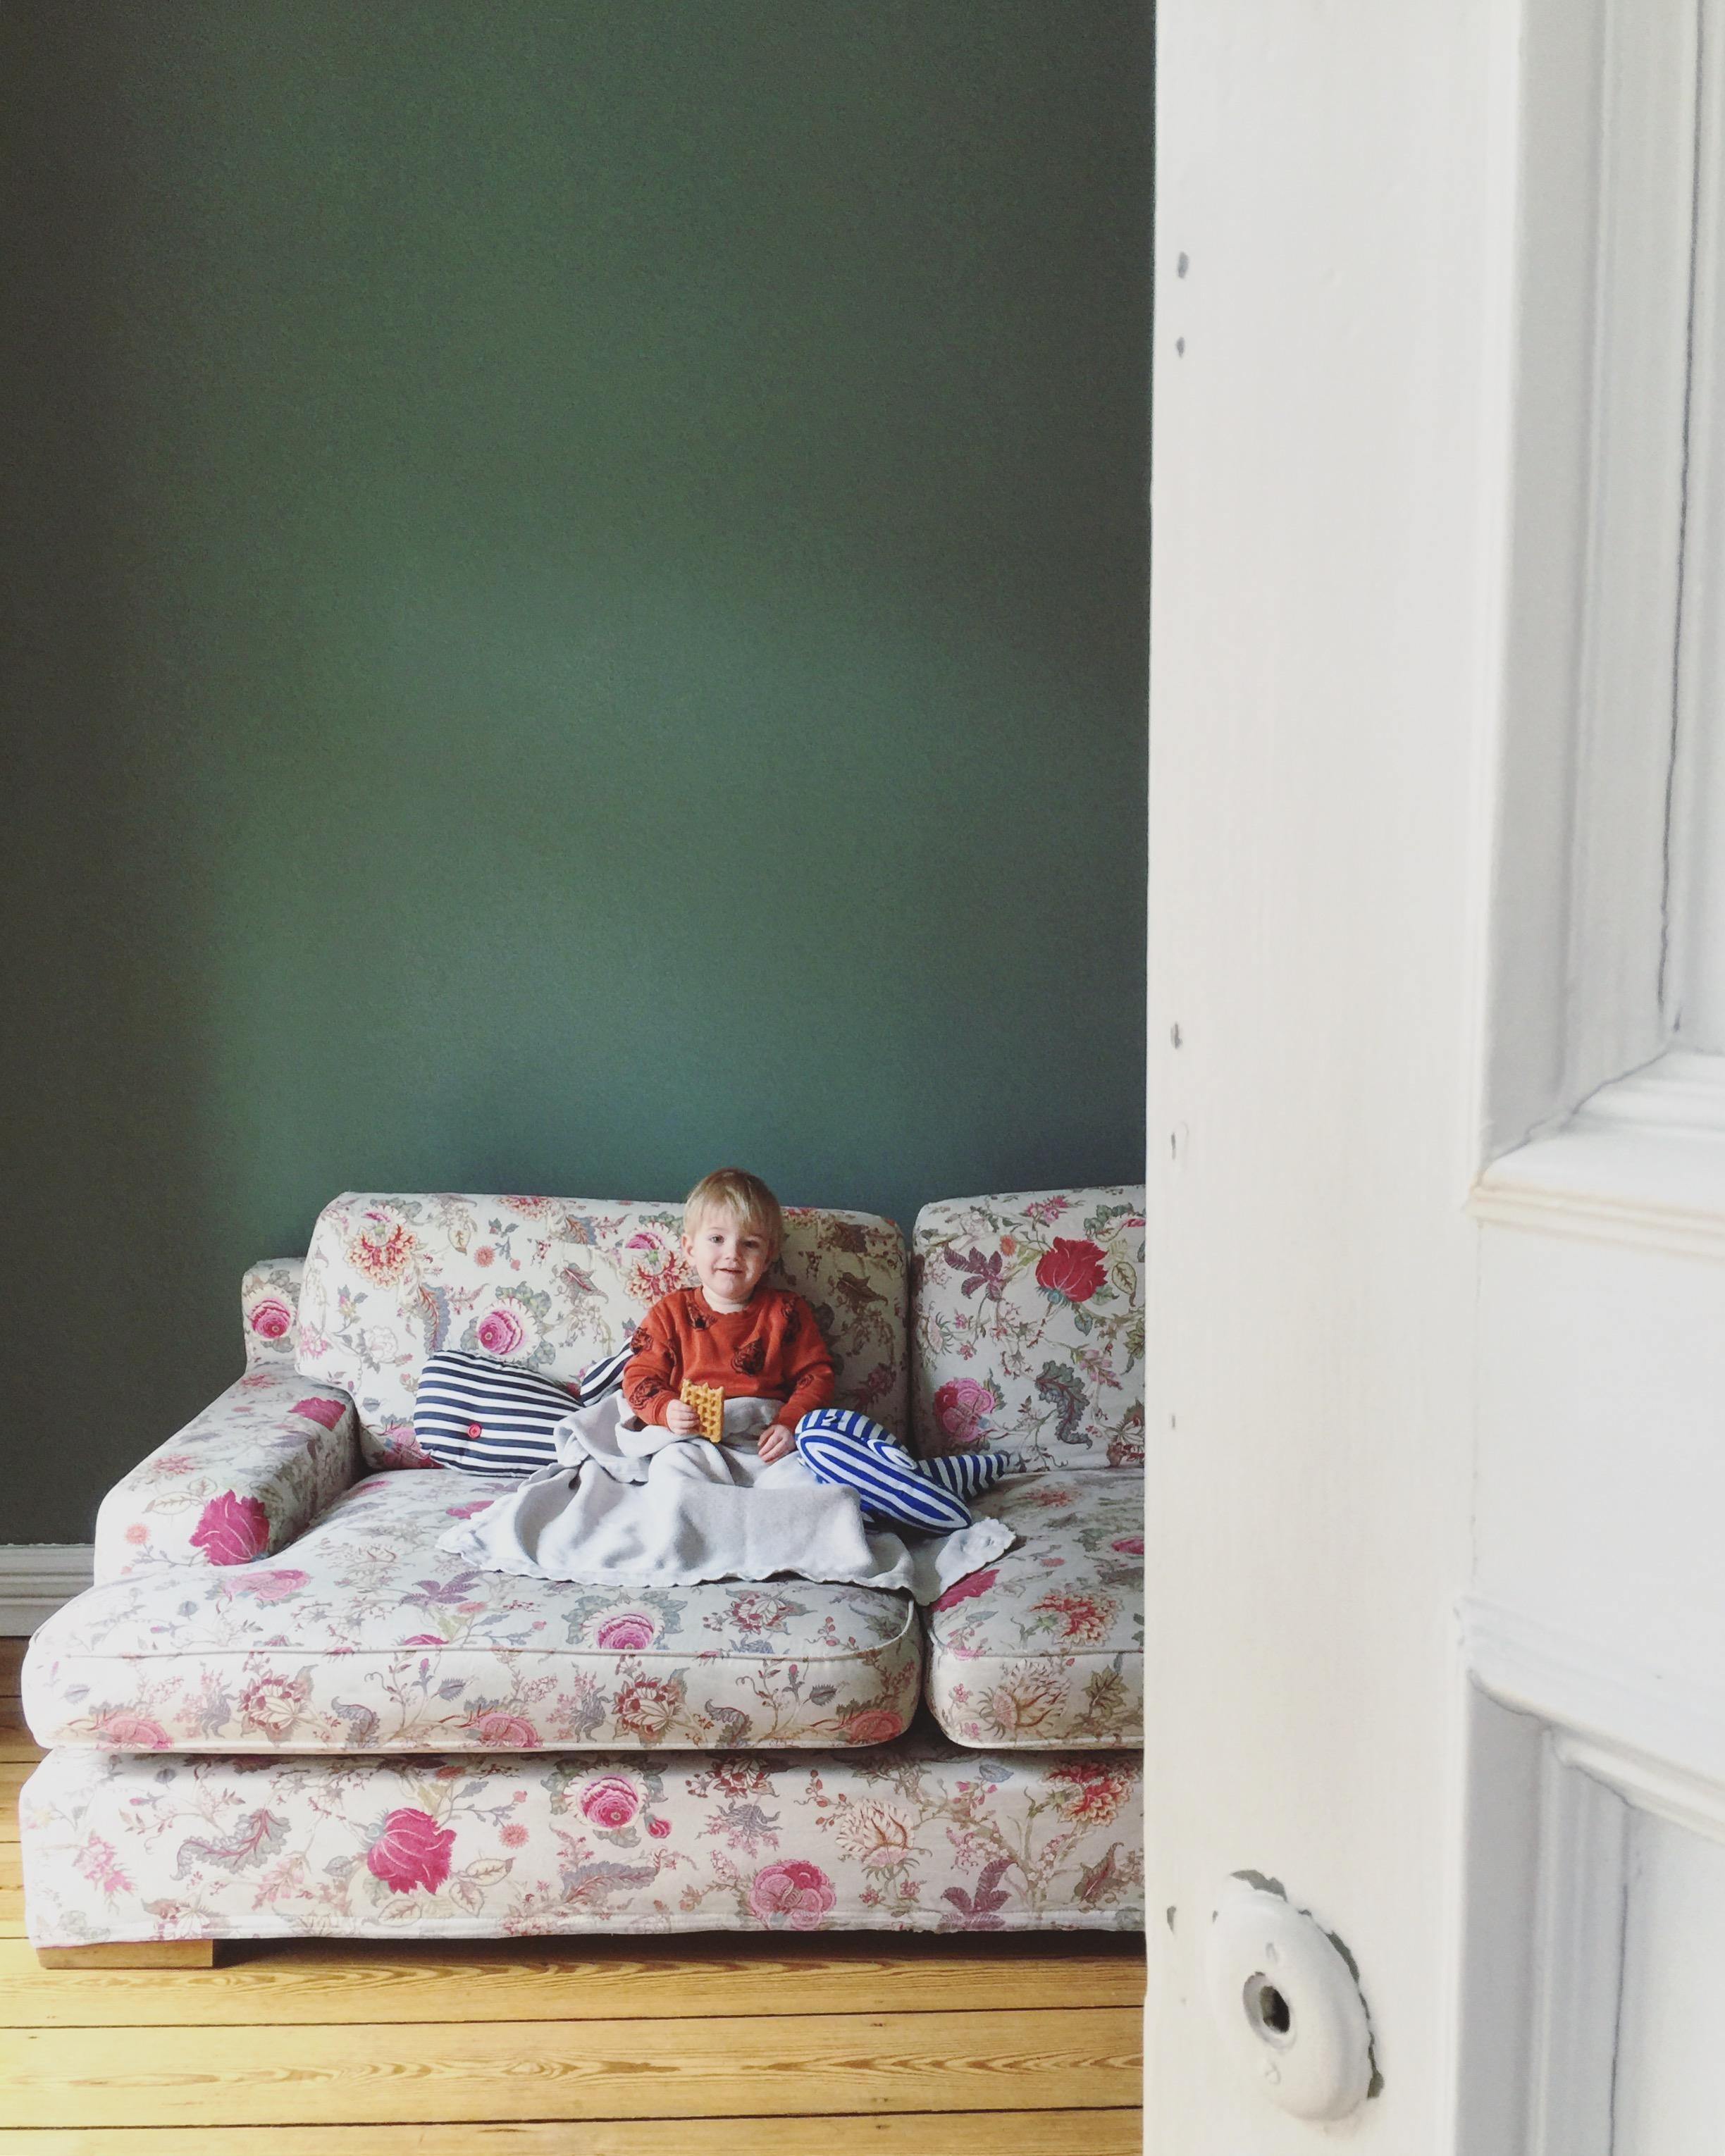 Das #wohnzimmer ist jetzt grün und die Raufasertapete endlich ab! #interior #cozy #couchstyle #bunteszuhause